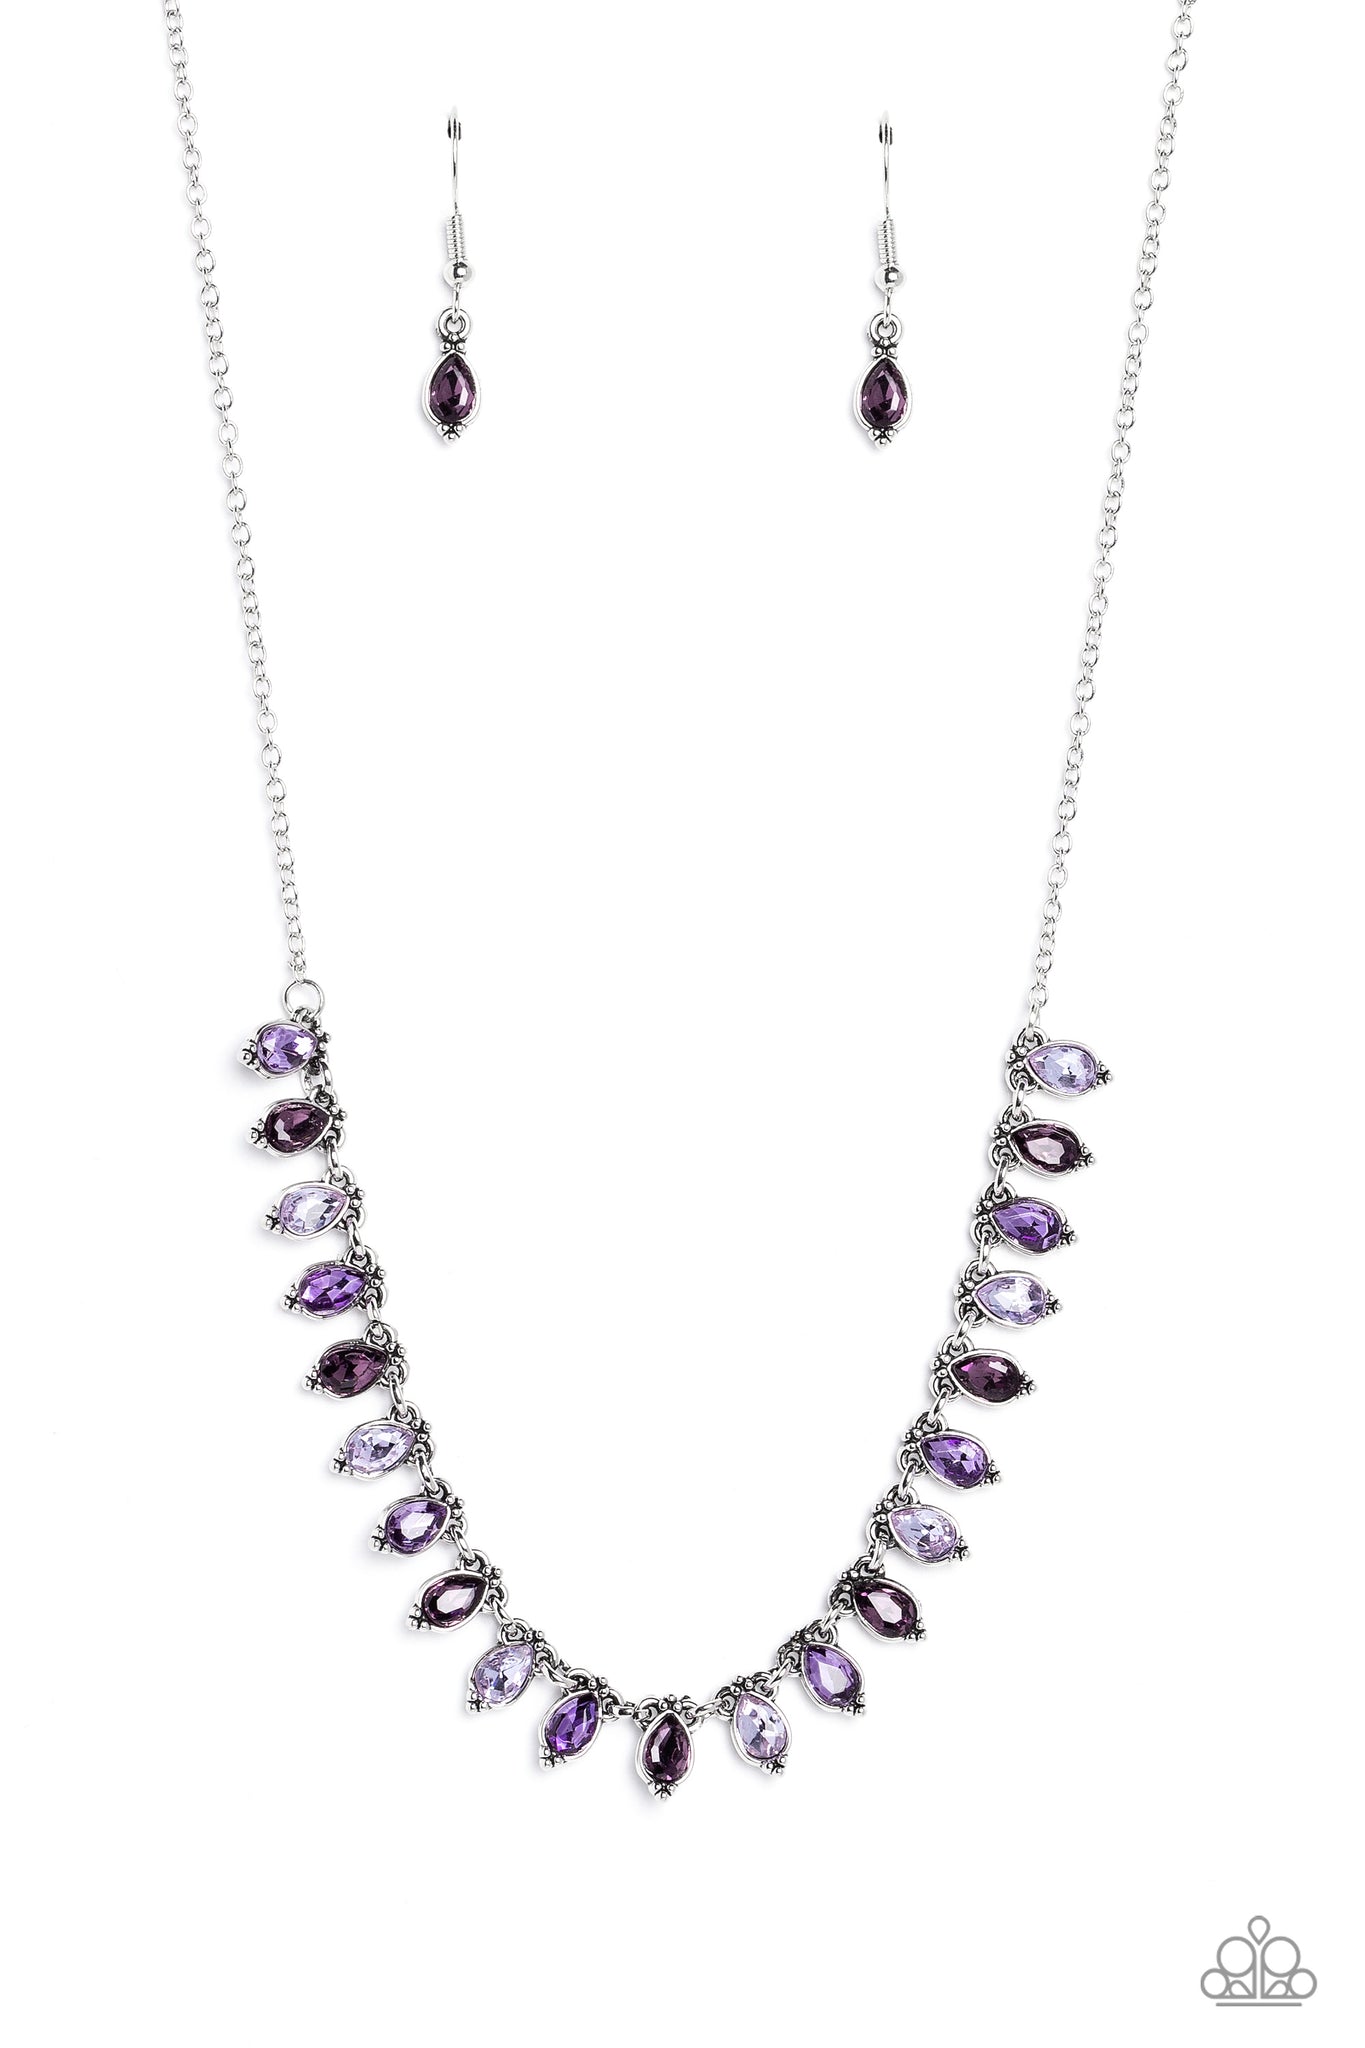 Fairy Light Fashion Necklace (Copper, Black, Purple)